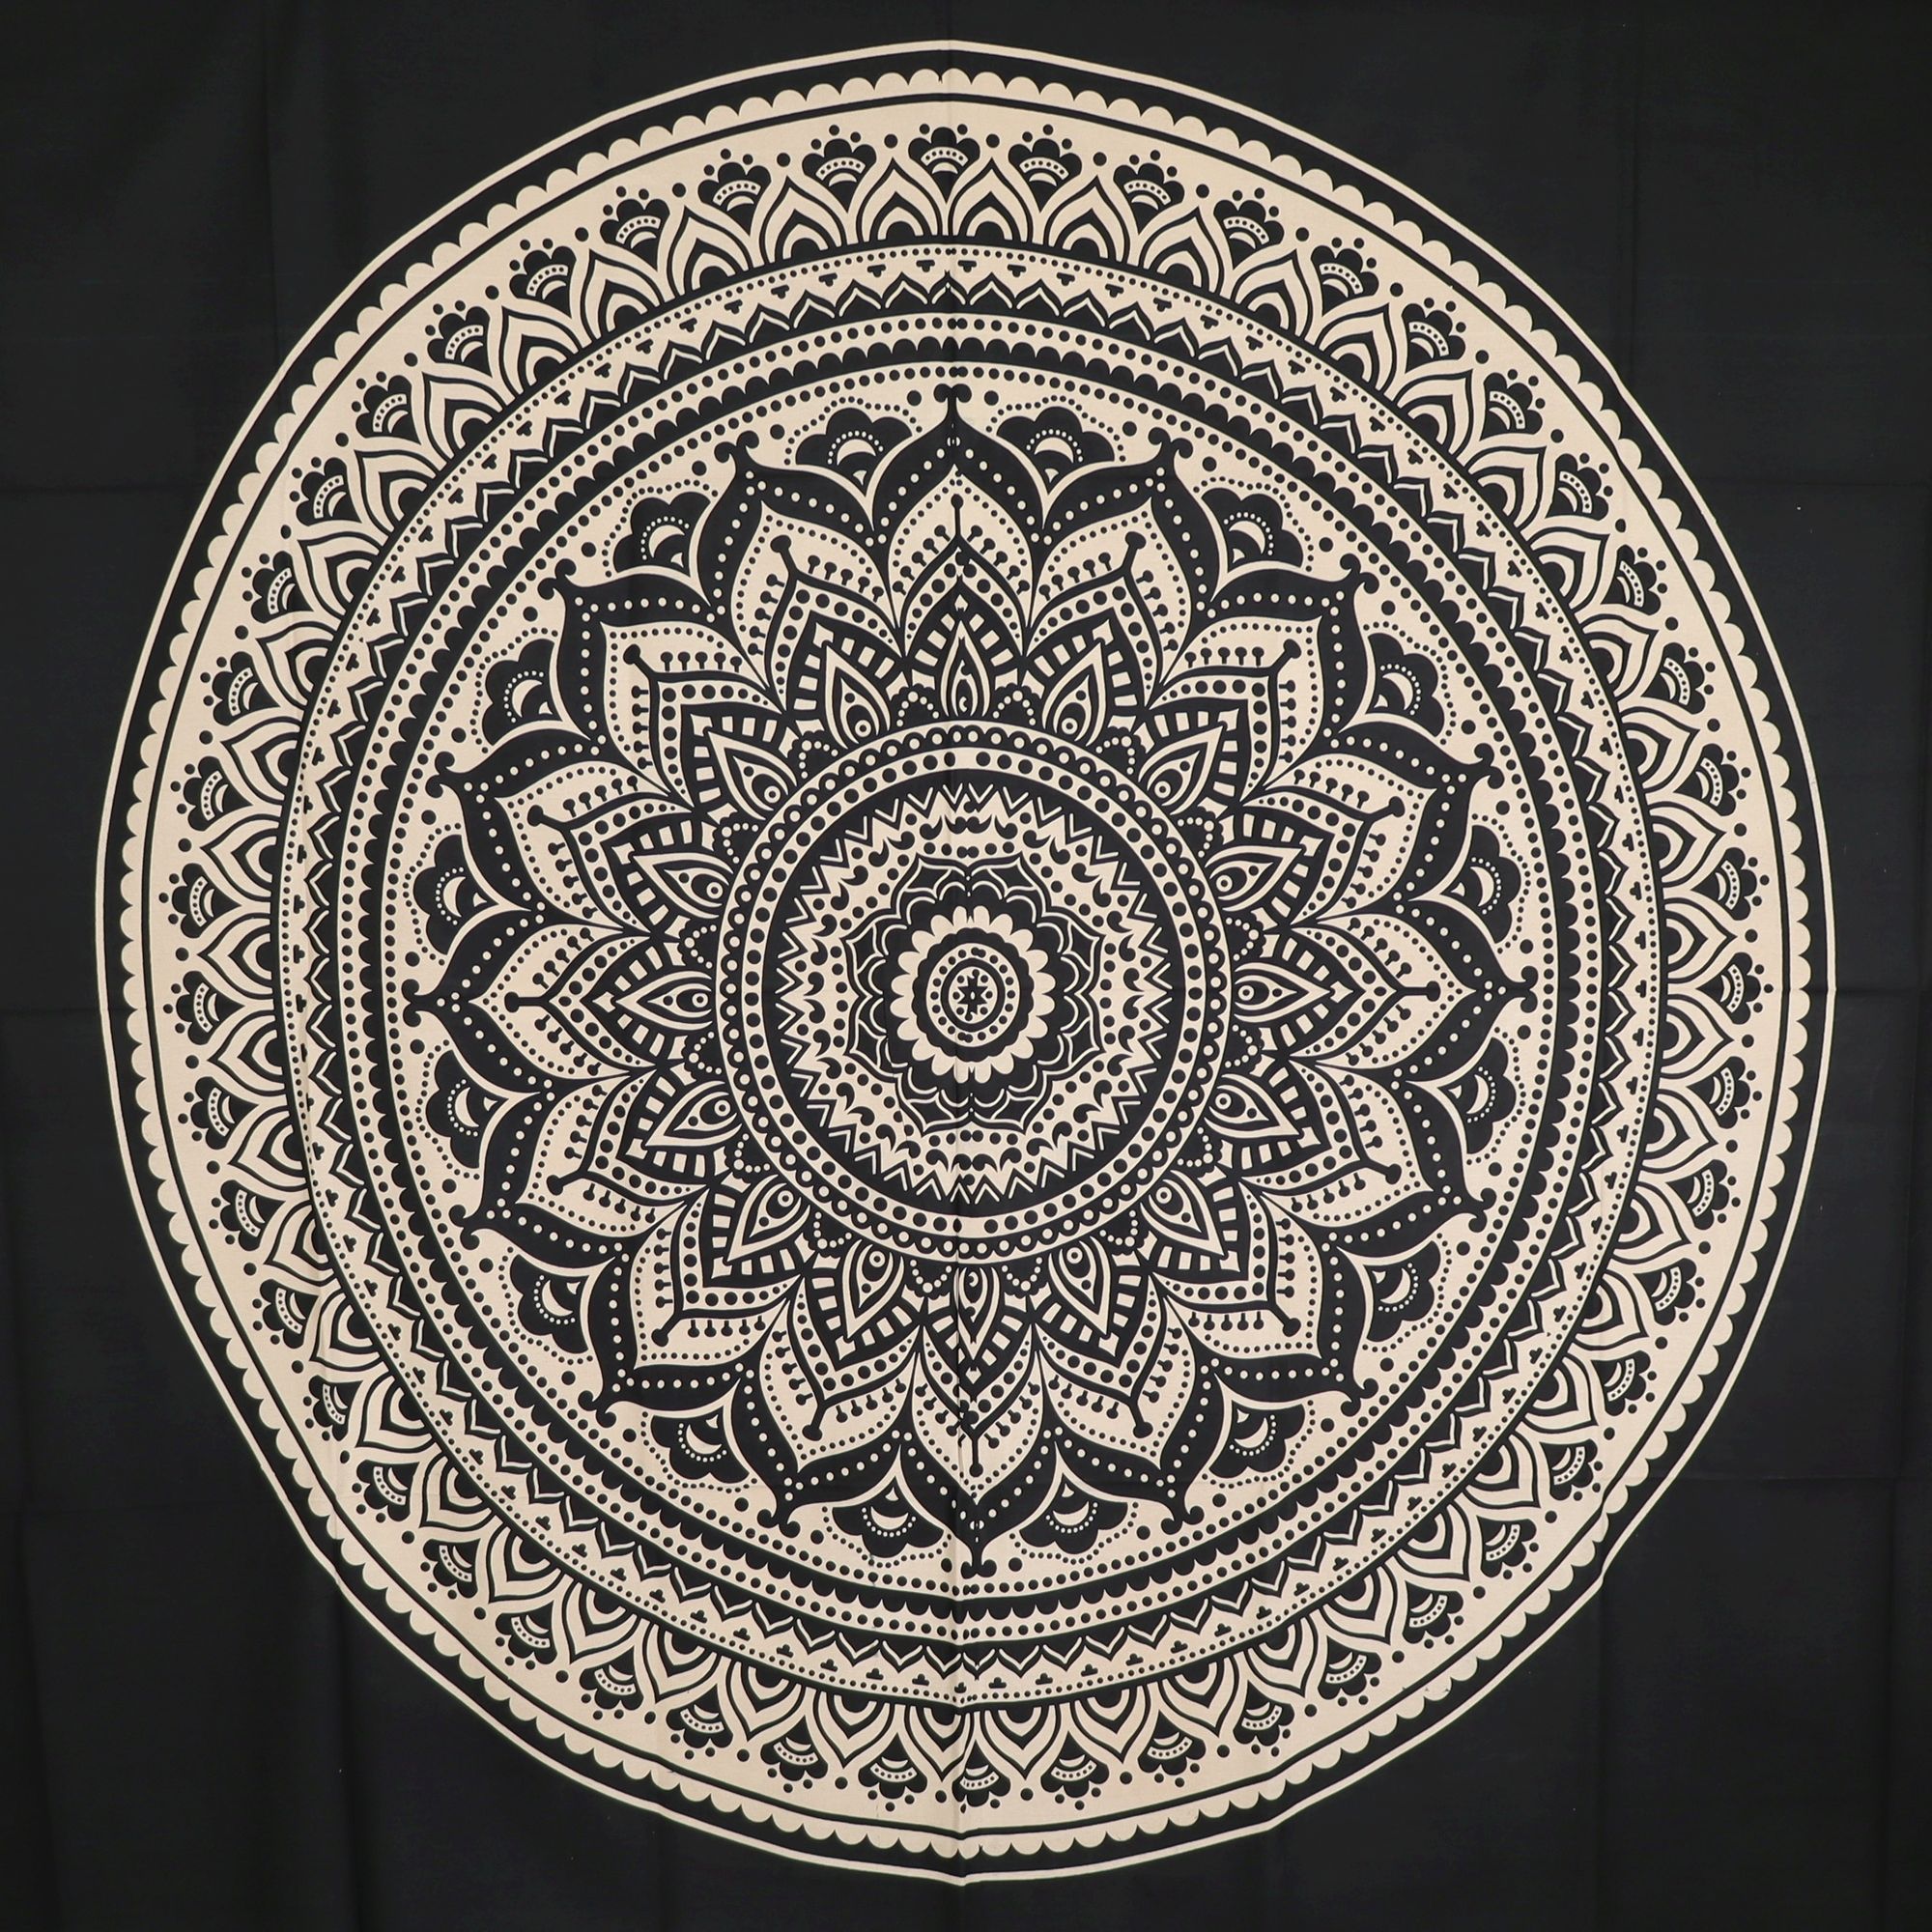 Wandtuch XXL 210x230 - Mandala Lotus Kreise - 100% Baumwolle - detailreicher indischer Druck - dekoratives Tuch, Wandbild, Tagesdecke, Bedcover, Vorhang, Picknick-Decke, Strandtuch